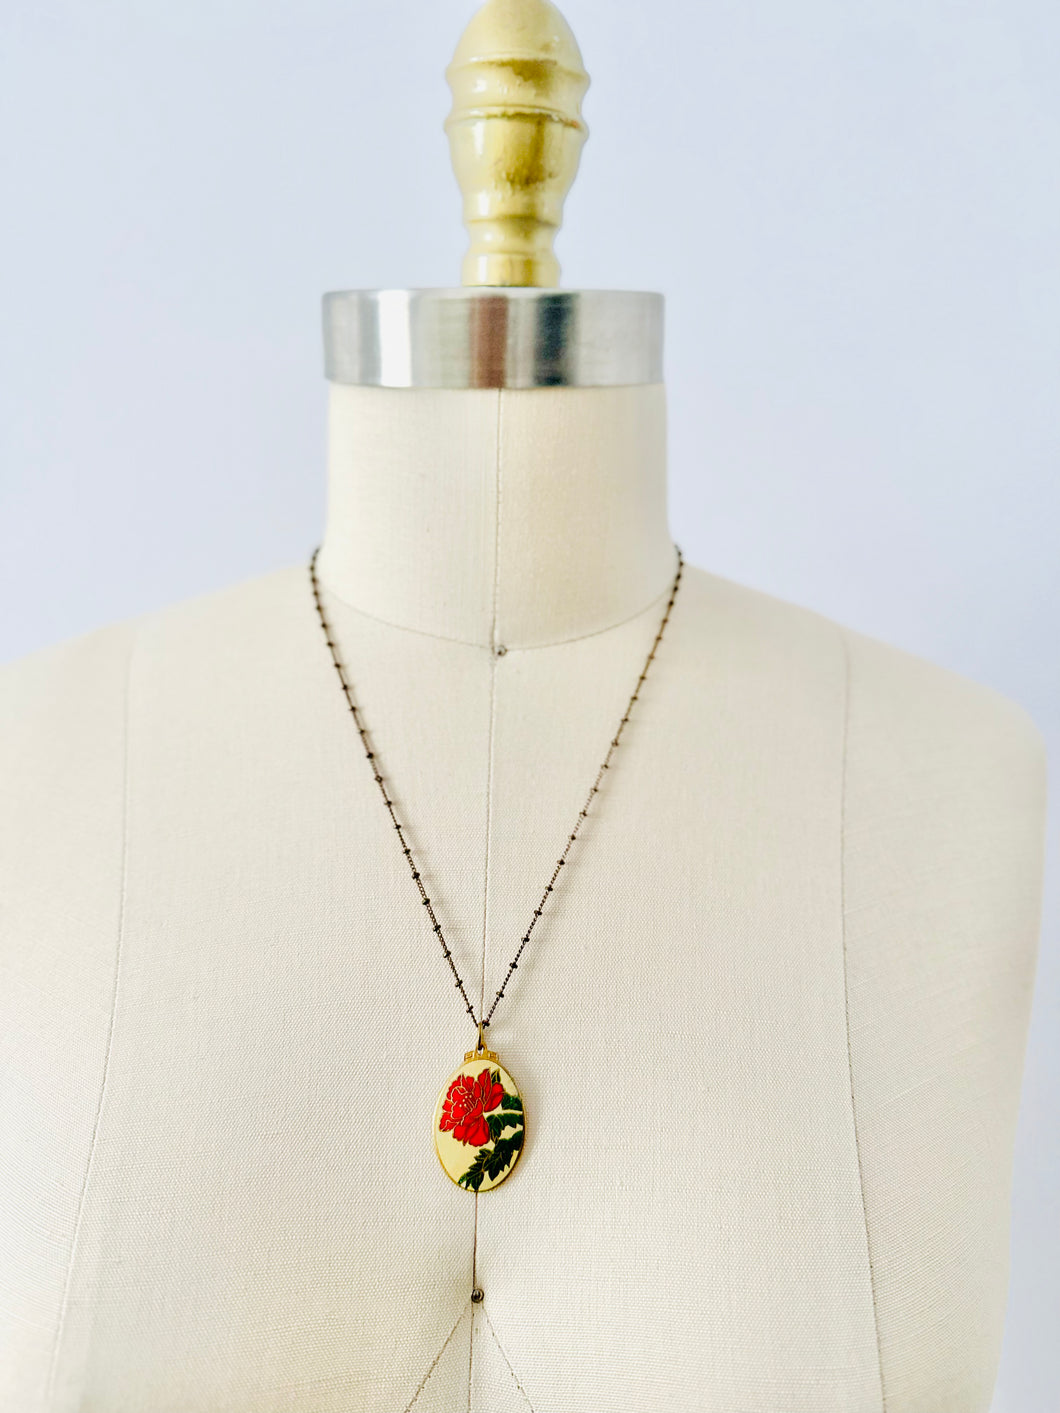 Vintage enamel floral pendant necklace